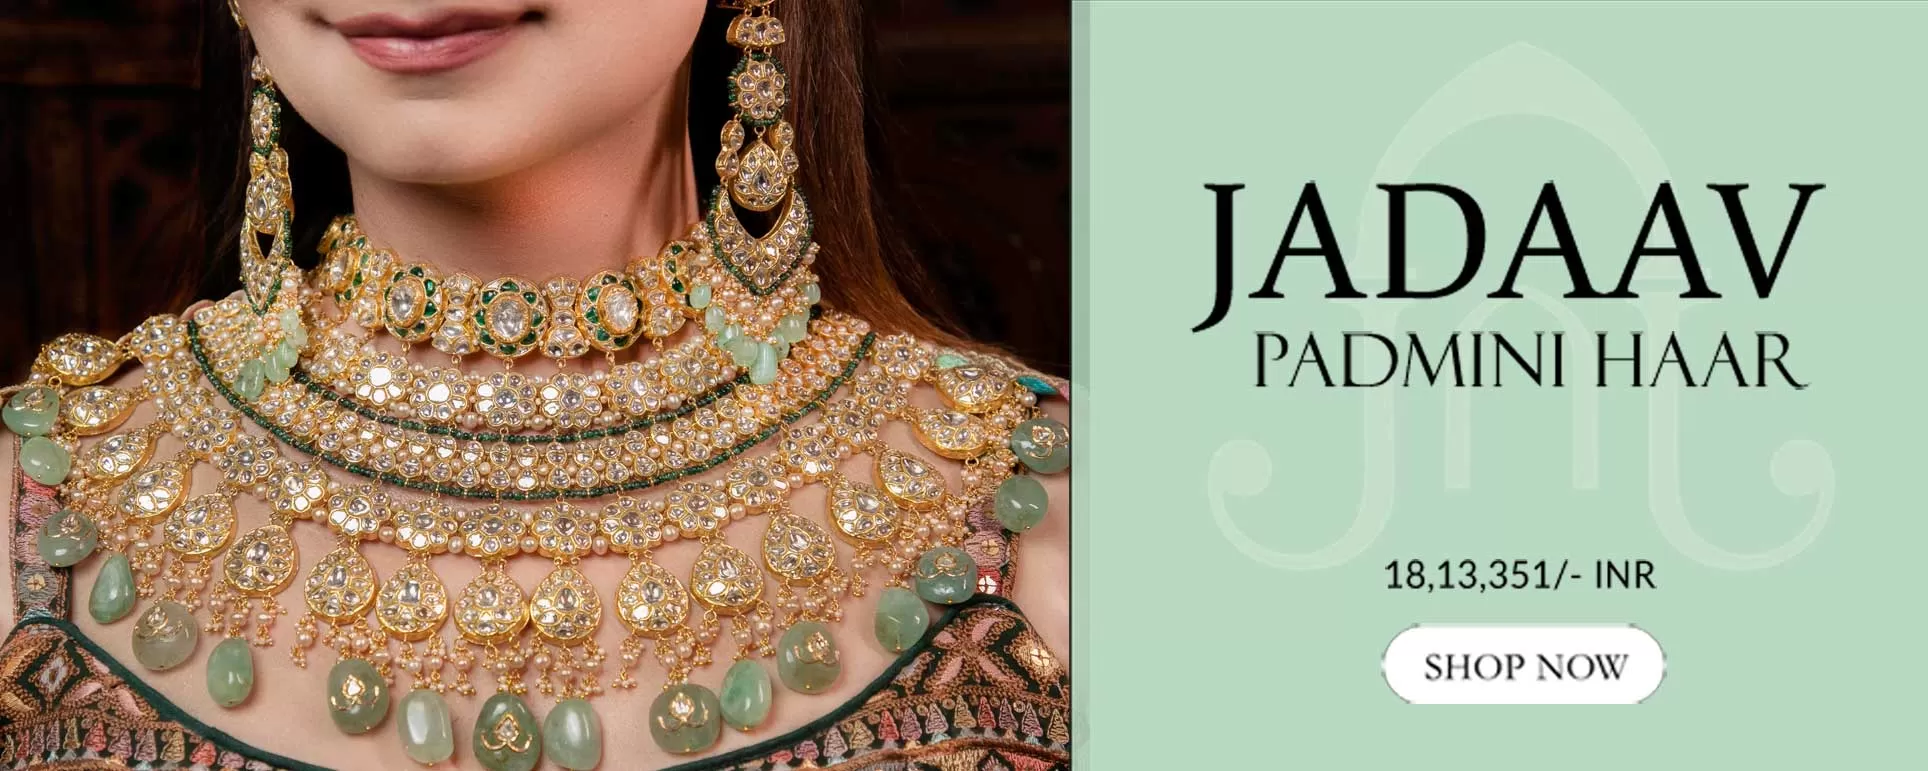 Jadaav Jewels